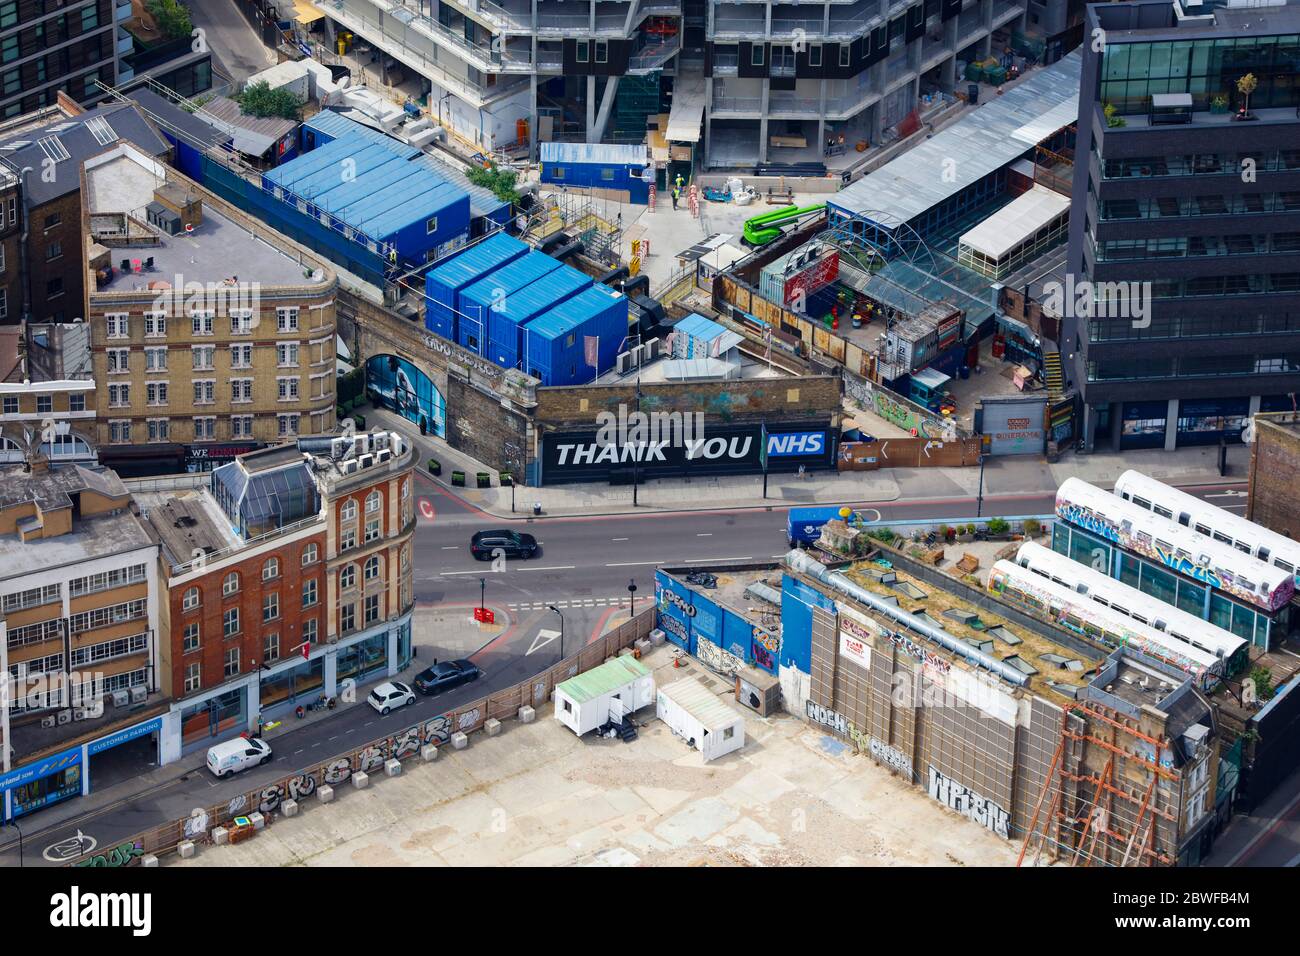 Luftaufnahme einer Londoner Baustelle mit dem Schild „Thank You NHS“ Stockfoto